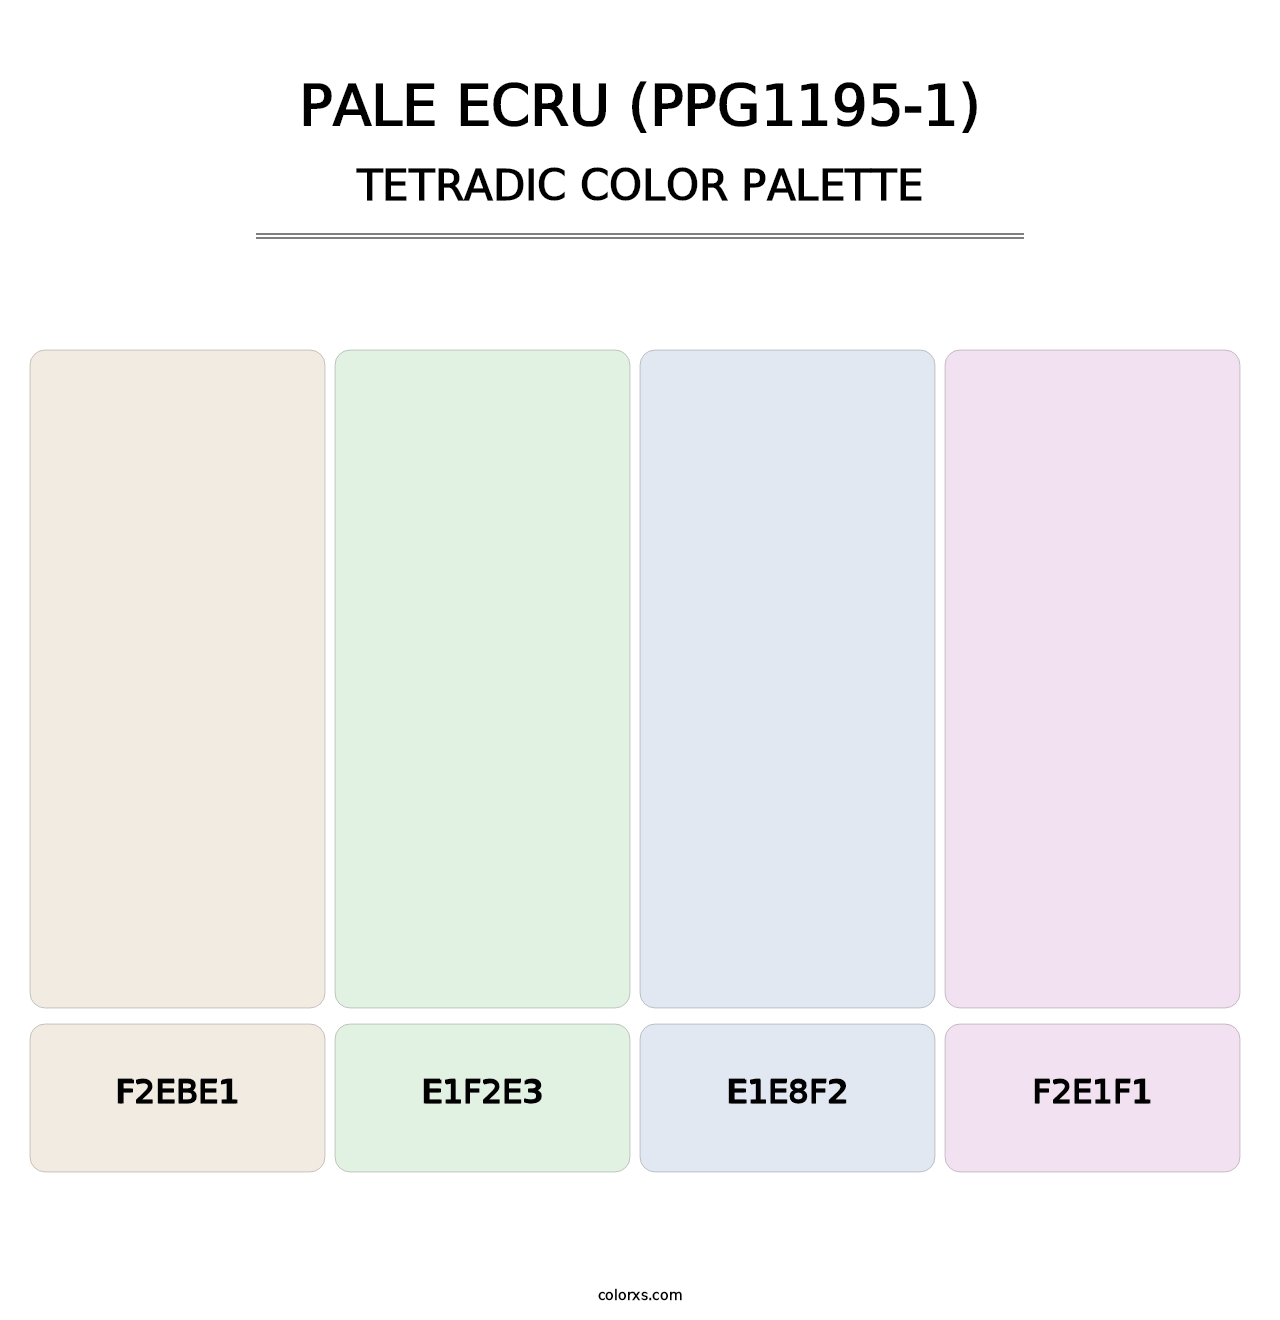 Pale Ecru (PPG1195-1) - Tetradic Color Palette